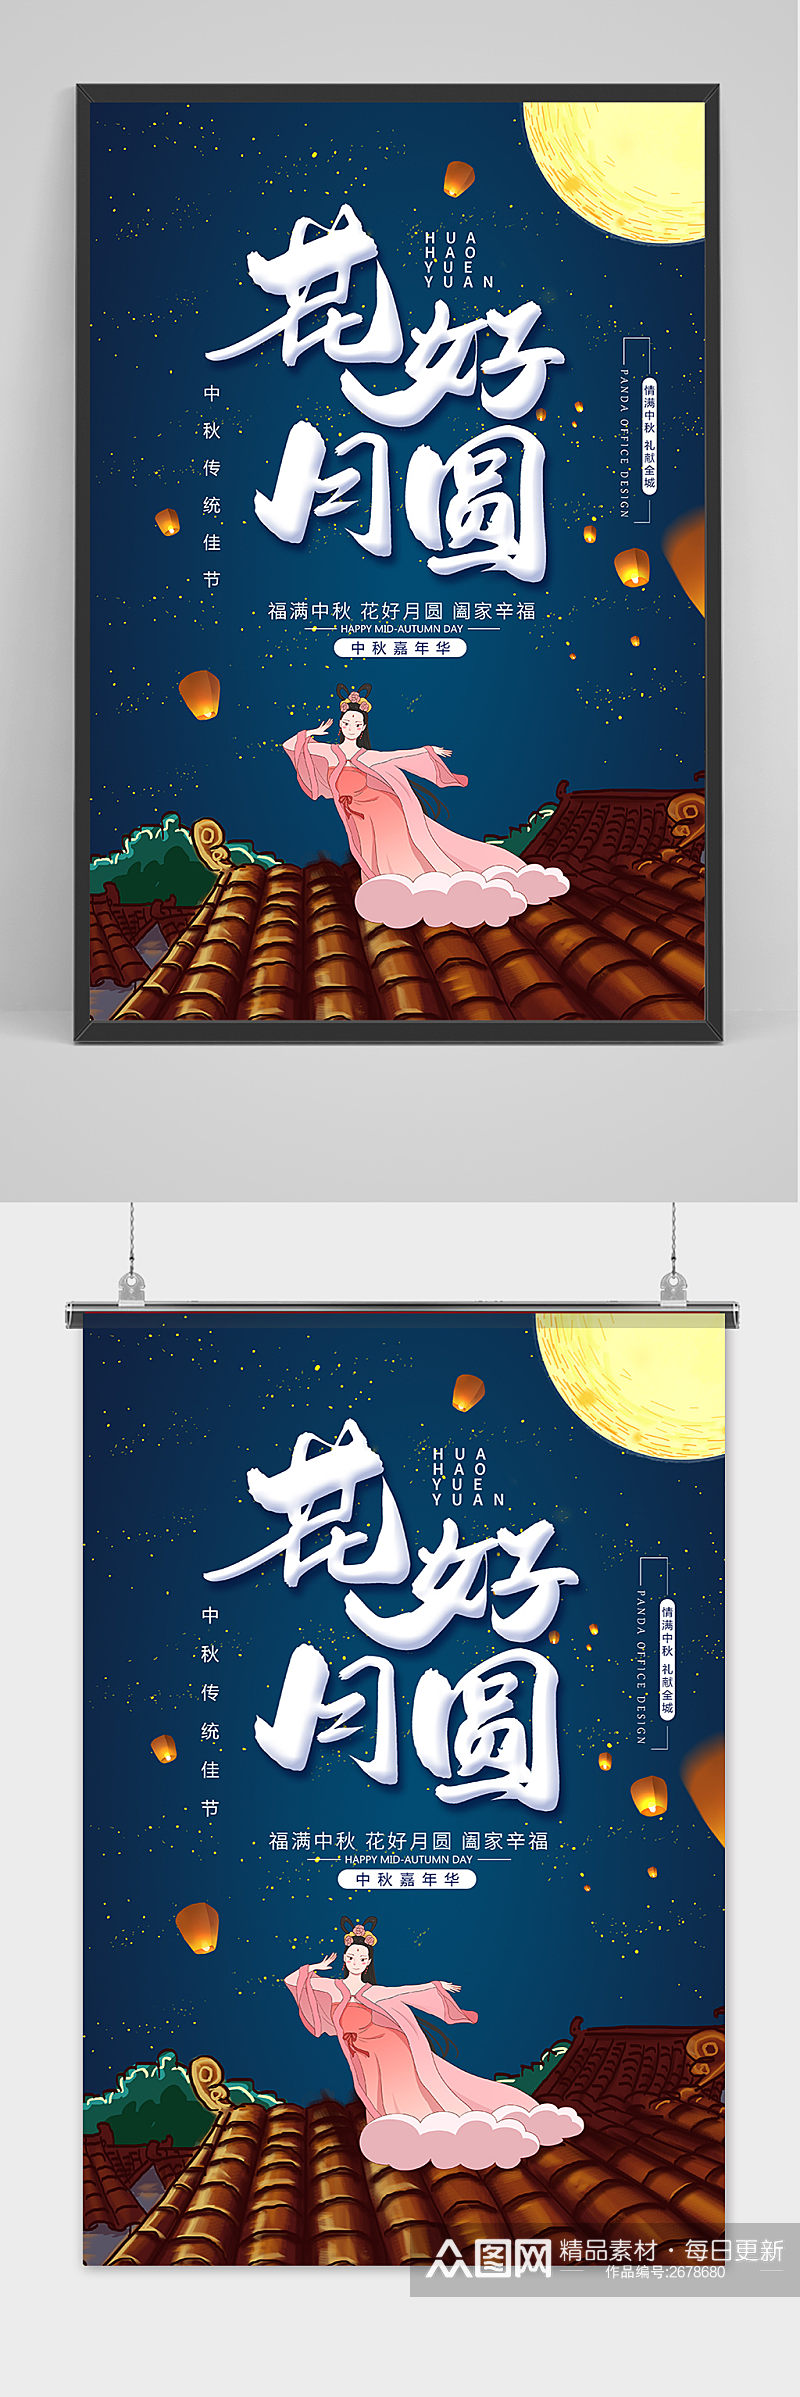 手绘复古中国风唯美中秋节海报素材